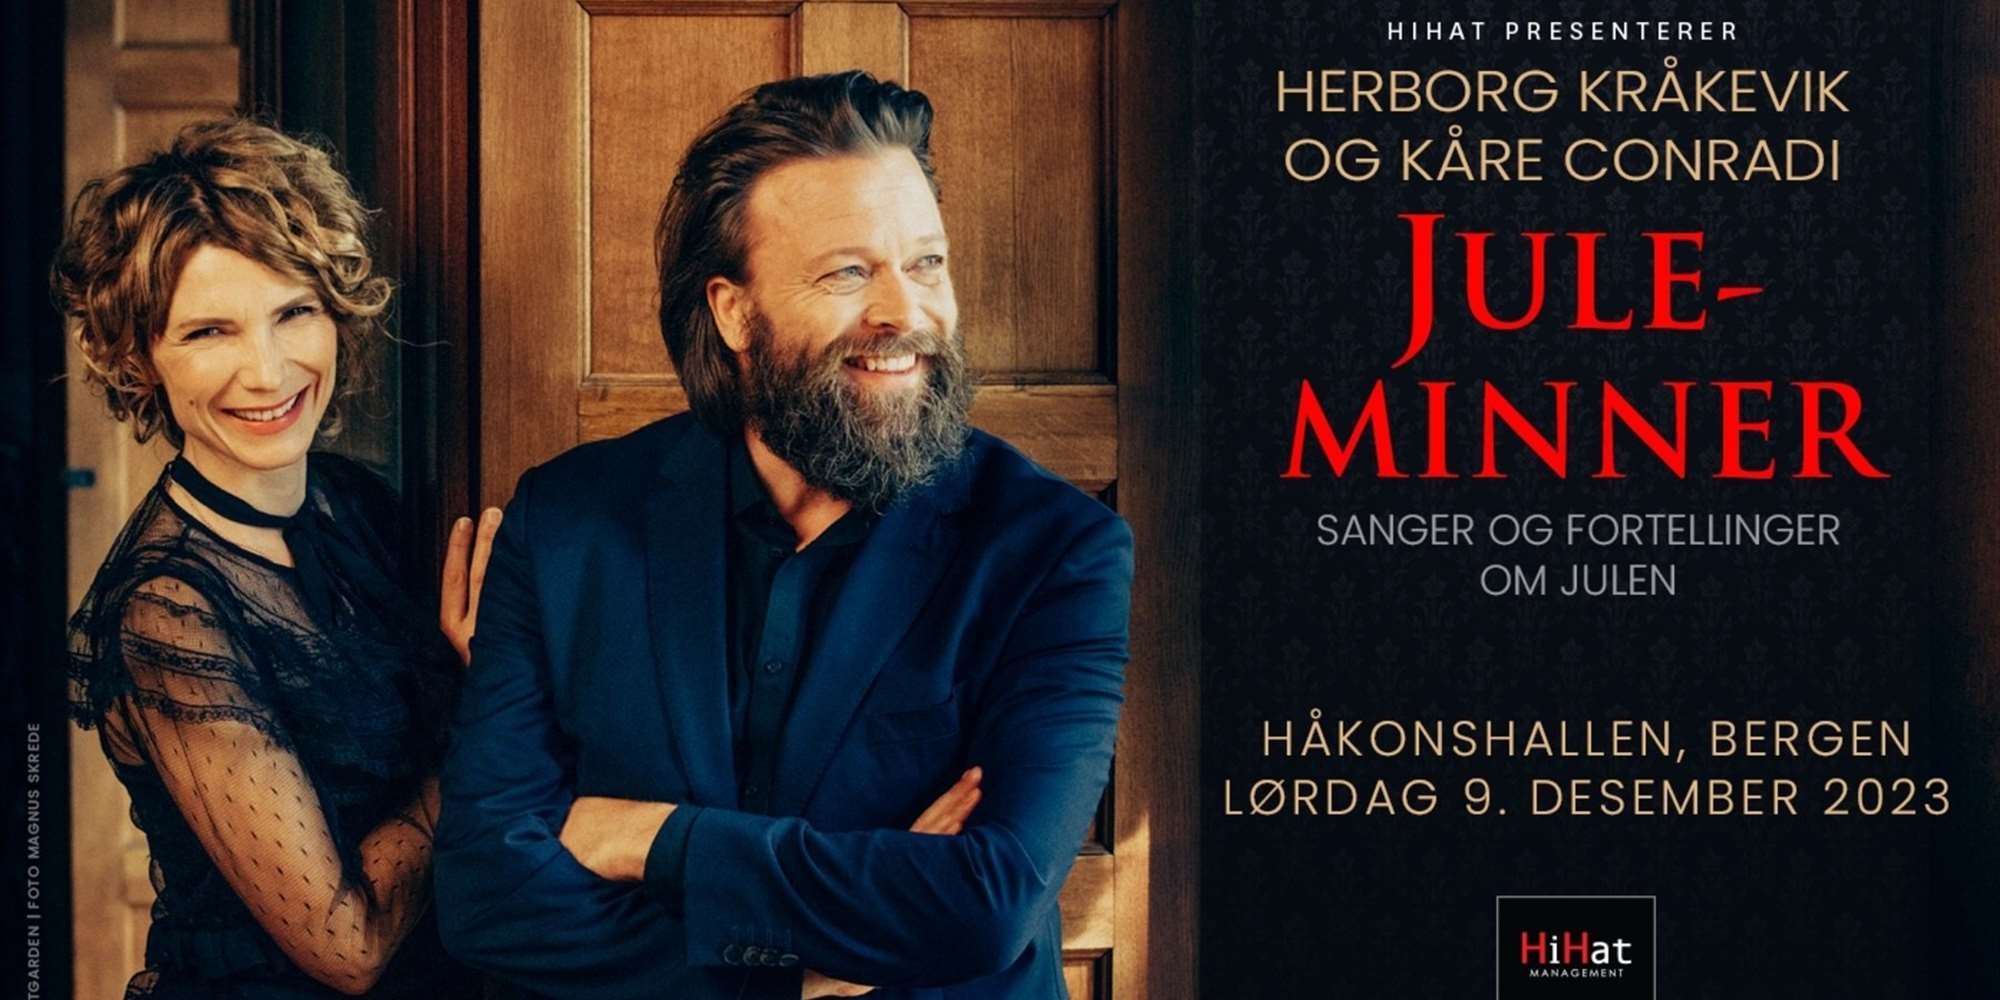 Herborg Kråkevik & Kåre Conradi